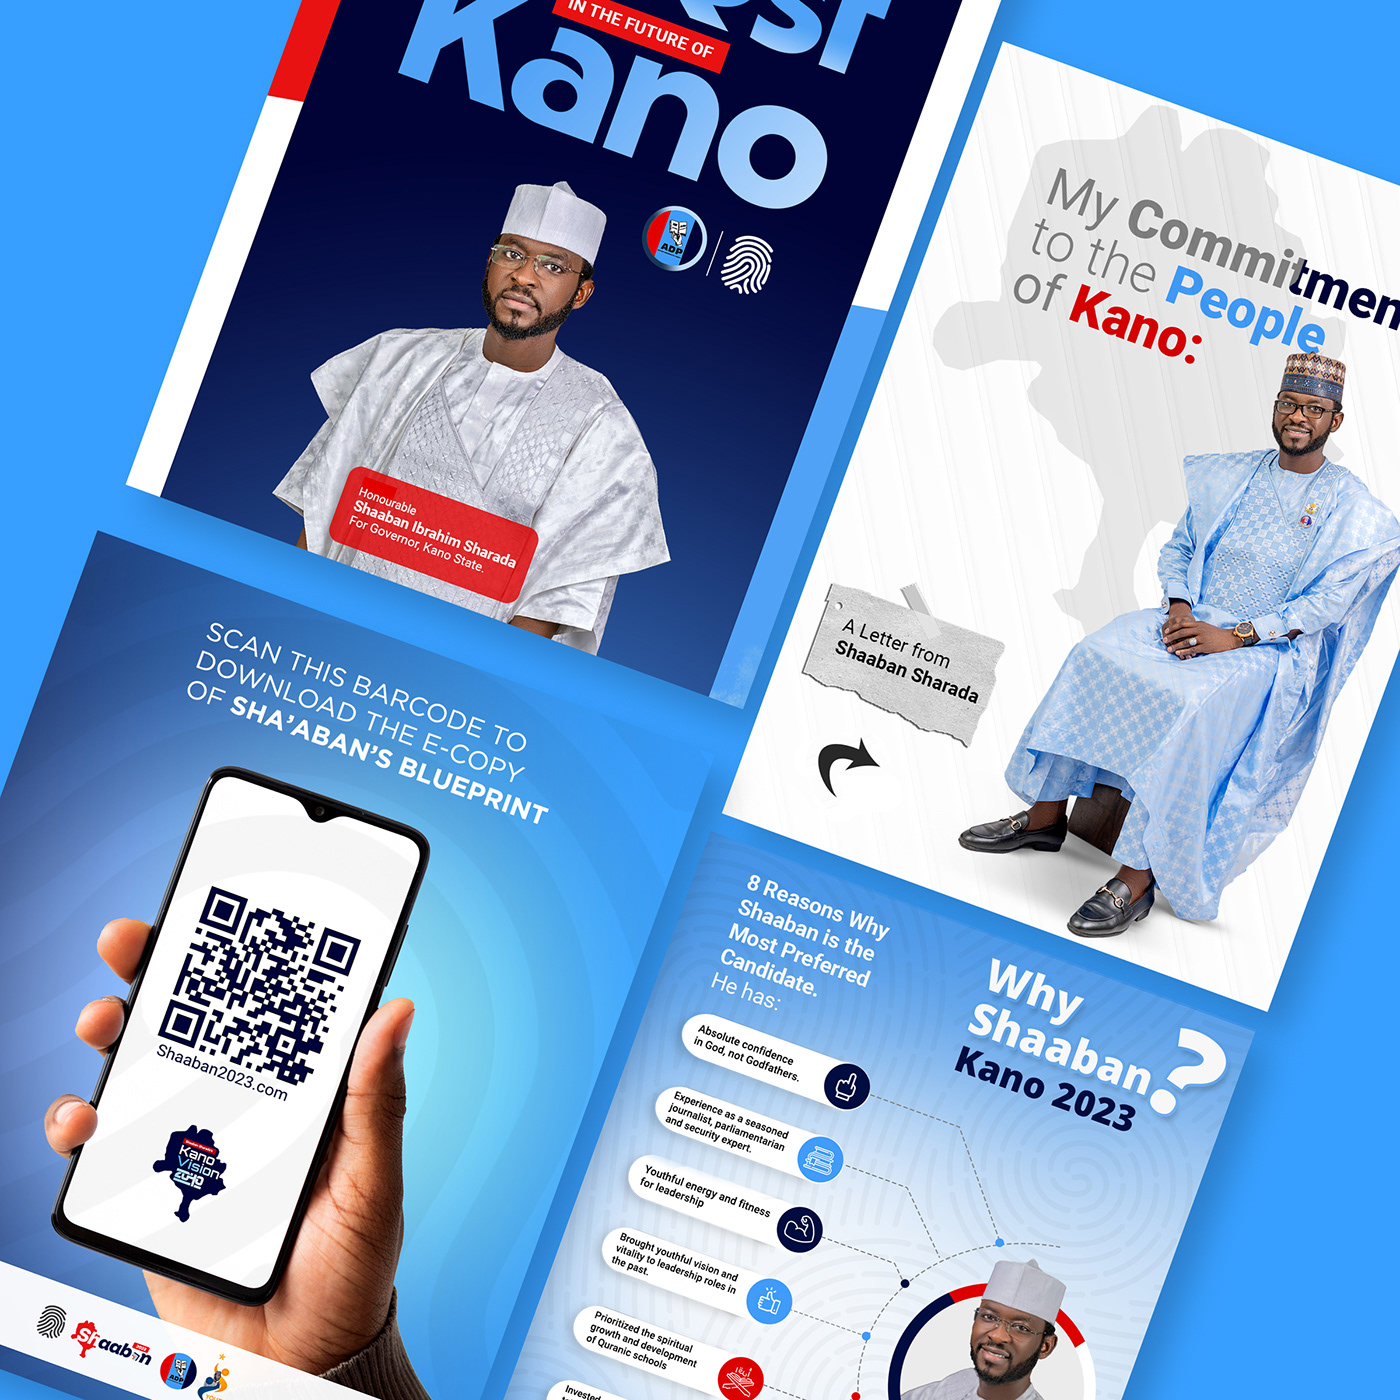 adp campaign KANO NIGERIA nigeria Political campaign political poster politics POSTER DESIGNS Shaaban sharada Social Media Design